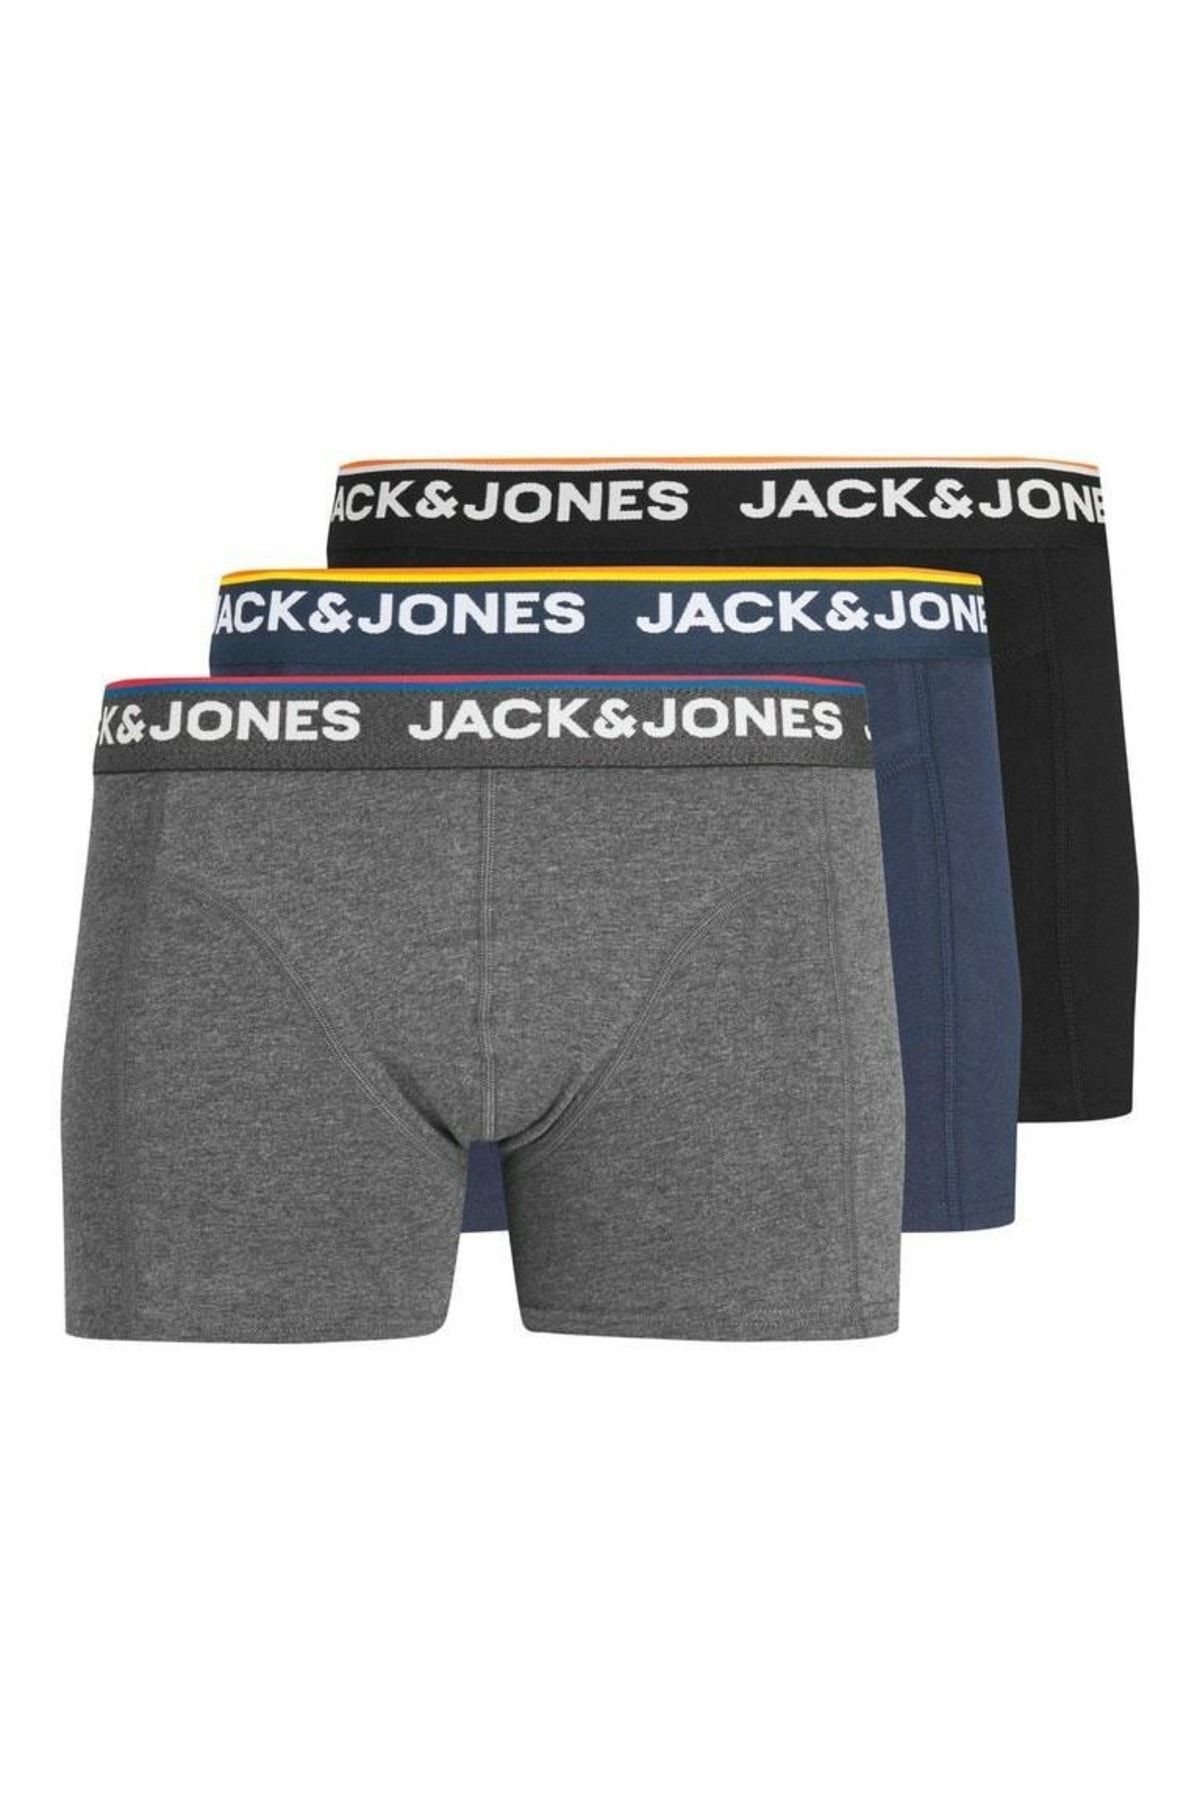 Jack & Jones Jack Jones Jacdon 3'lü Erkek Boxer 12213087